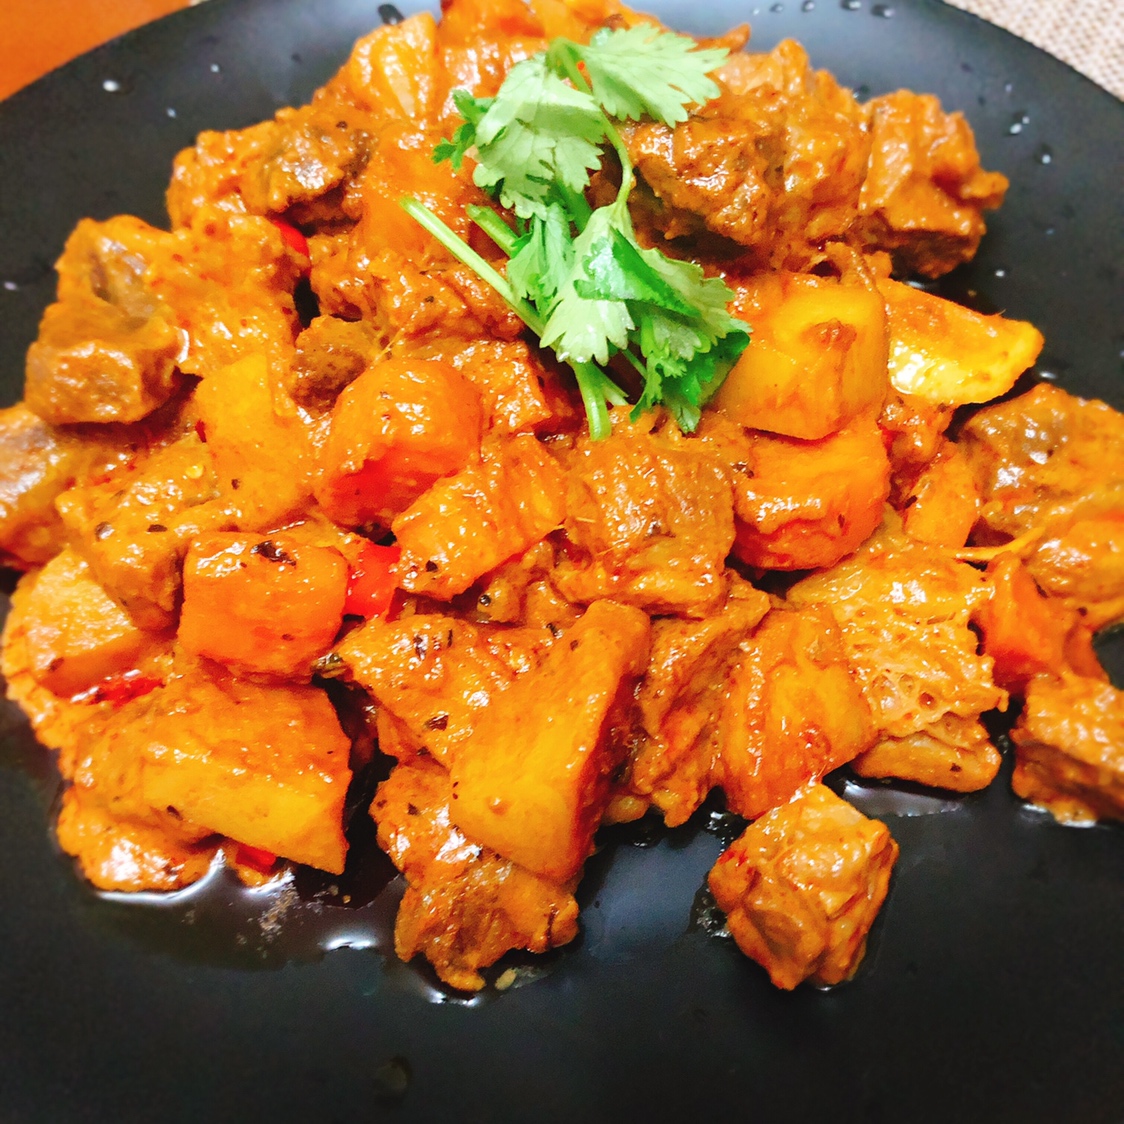 【山姆厨房】泰式红咖喱牛腩panang curry with beef